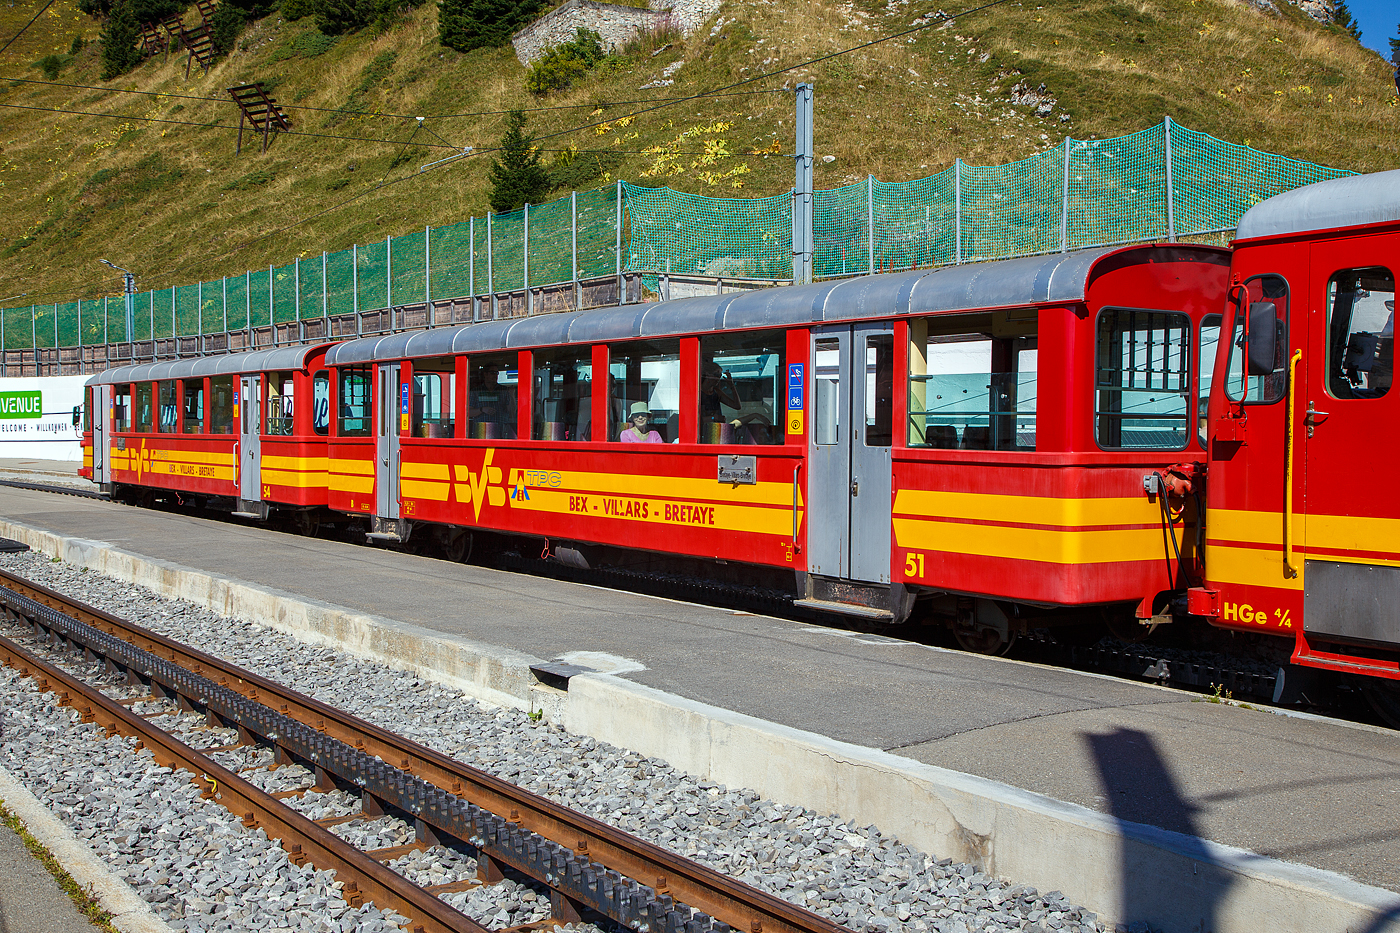 Vor der tpc BVB HGe 4/4 32 „Villars“ am 10 September 2023 im Bergbahnhof Col-de-Bretaye (1.808 m ü. M.), eingereiht in einen Personenzug, der Steuerwagen tpc BVB Bt 54 und der Personenwagen tpc BVB B 51.

Die vierachsigen Wagen wurden 1953 von der SIG (Schweizerische Industrie-Gesellschaft) in Neuhausen am Rheinfall gebaut, die Elektrik ist von der MFO (Maschinenfabrik Oerlikon).

Heute sind diese Garnituren nicht mehr im Planeinsatz. Hier an dem Wochenende (08 bis 10 September 2023) feiert die TPC 125 Jahre BVB! (Les TPC célèbrent les 125 ans du BVB!). So kamen auch historische Züge und Triebwagen zum Einsatz.